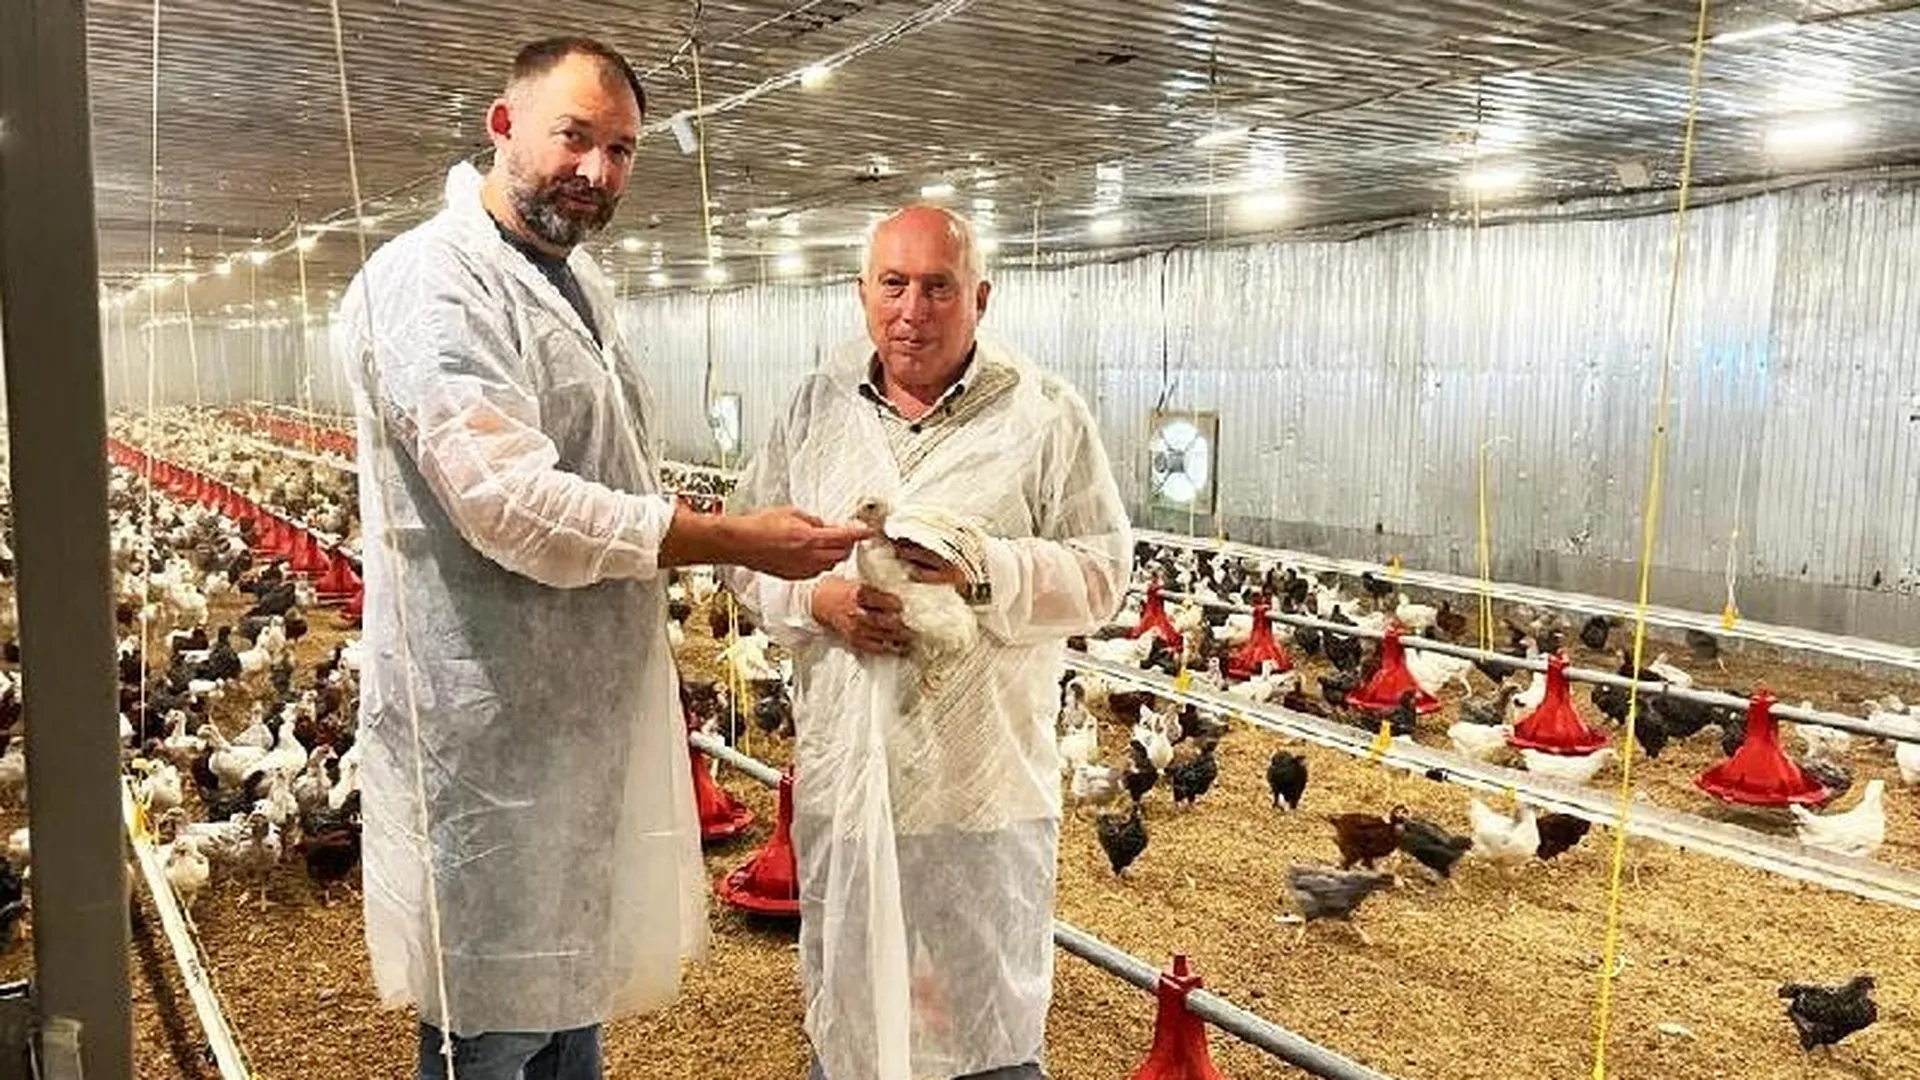 Производство генетически чистых чешских кур стартовало впервые в РФ благодаря фермеру из Шаховской